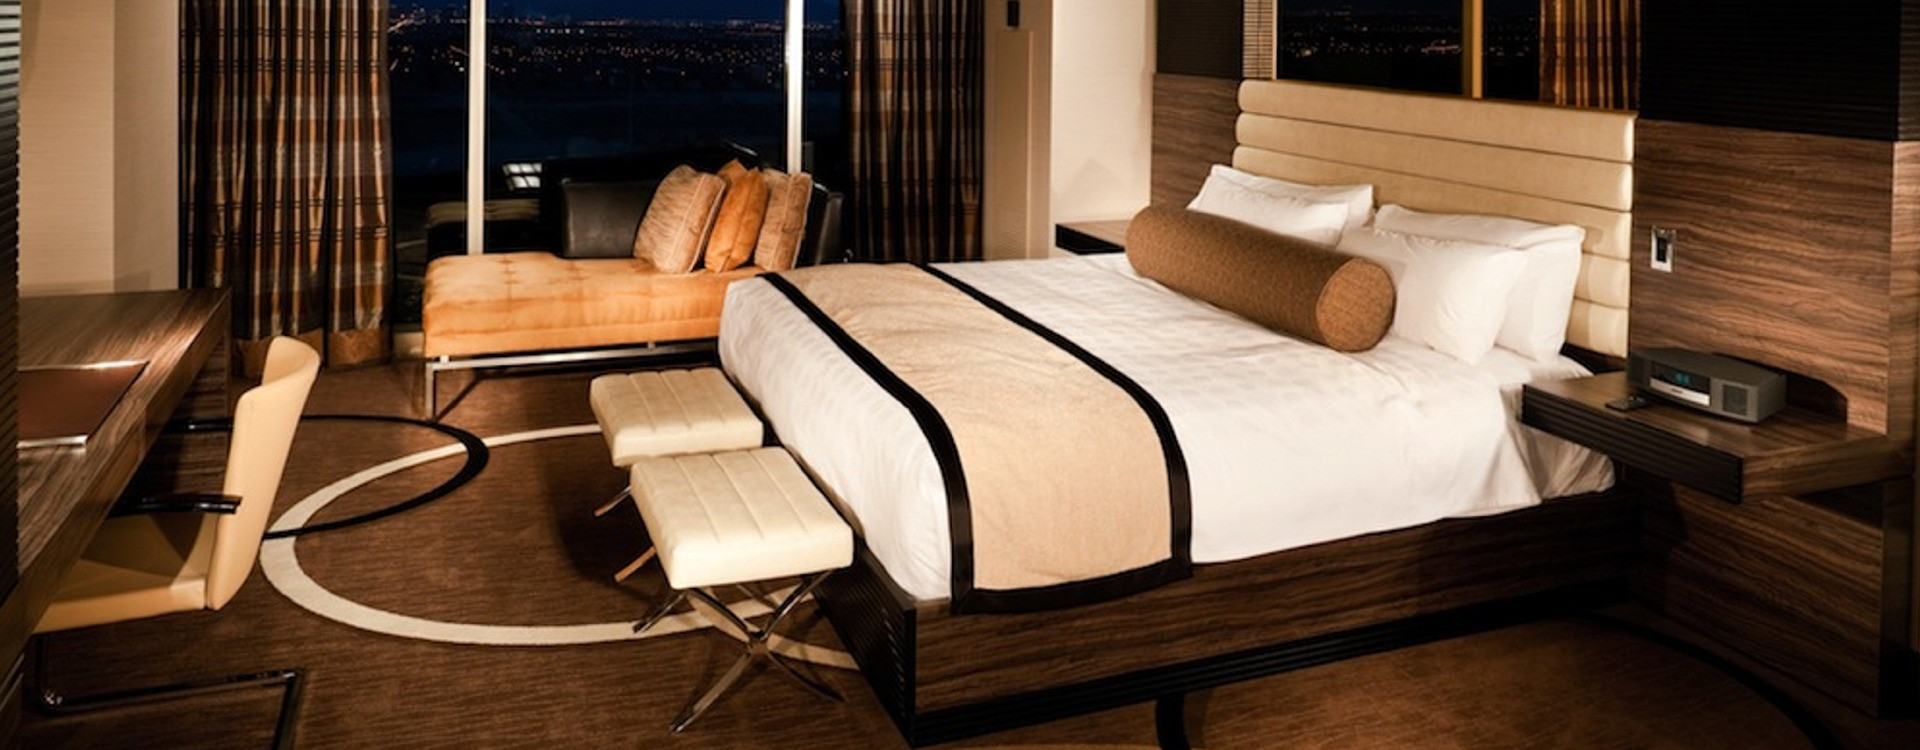 Защо леглата в хотелите са толкова удобни?